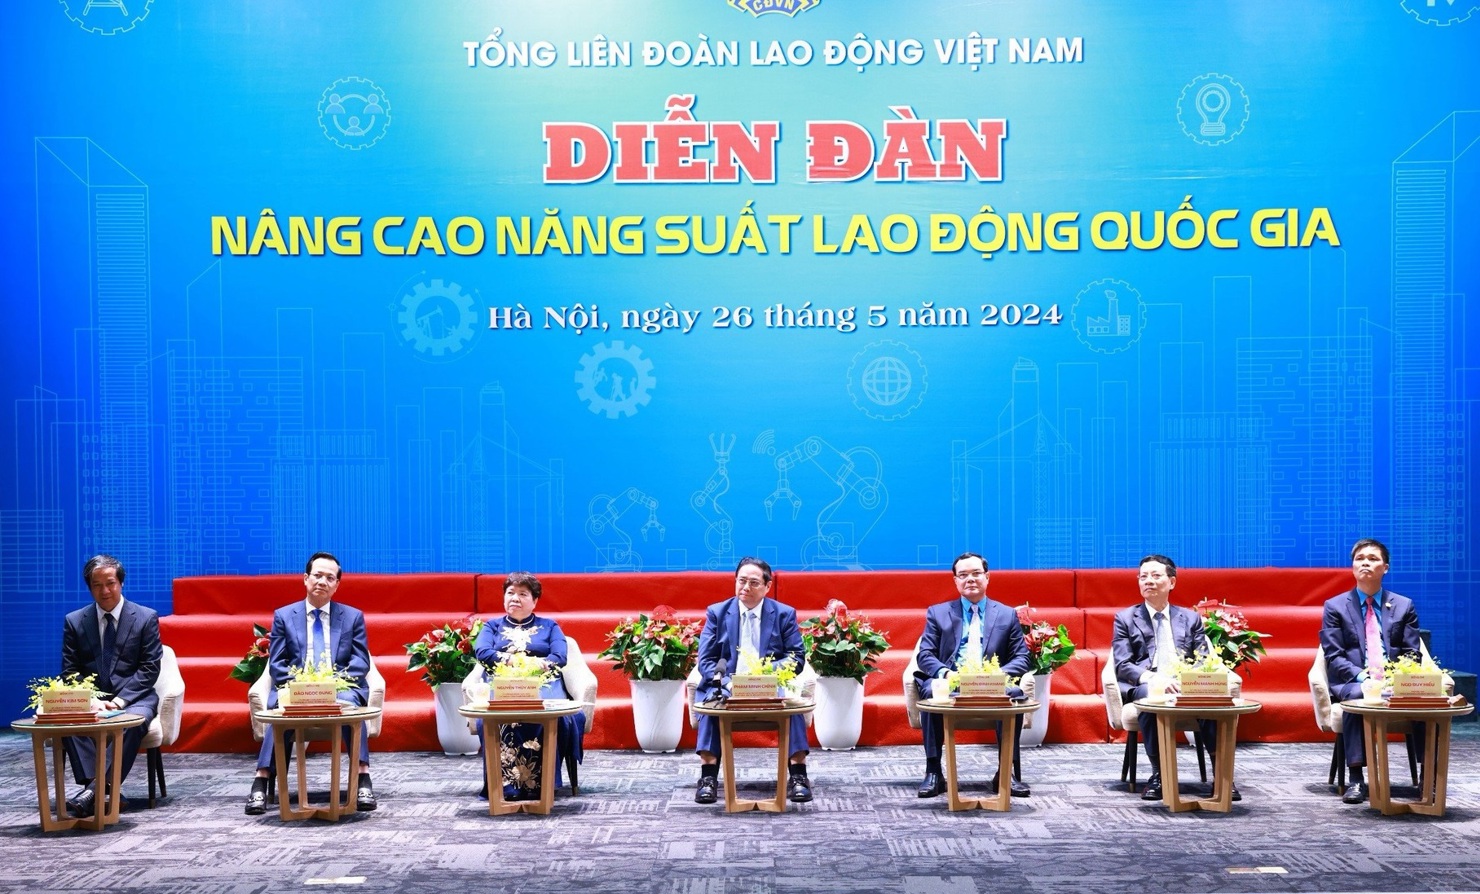 Thủ tướng Phạm Minh Chính và các đại biểu tham dự Diễn đàn "Nâng cao năng suất lao động Quốc gia năm 2024". Ảnh: VGP/Nhật Bắc.